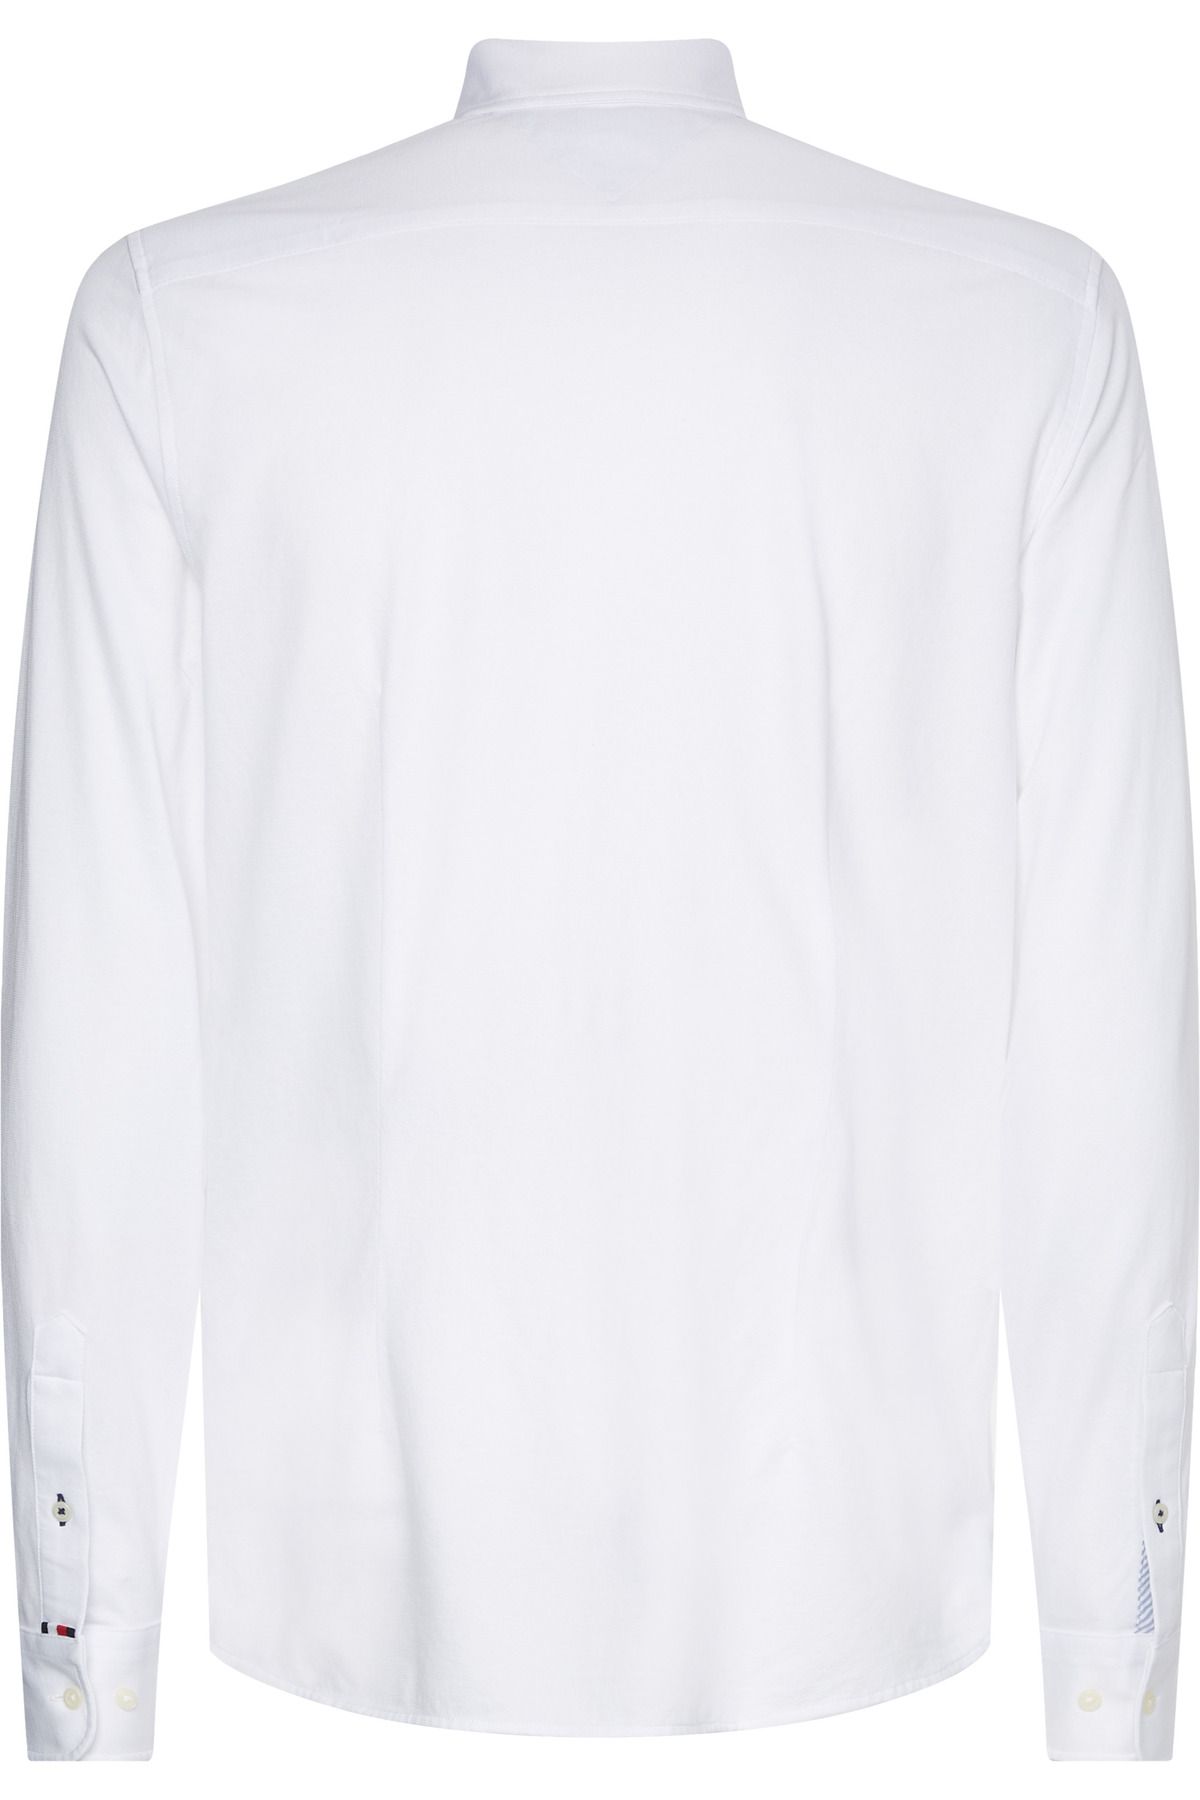 Tommy Hilfiger 1985 Knıt Shirt Trendyol Sf - Solid